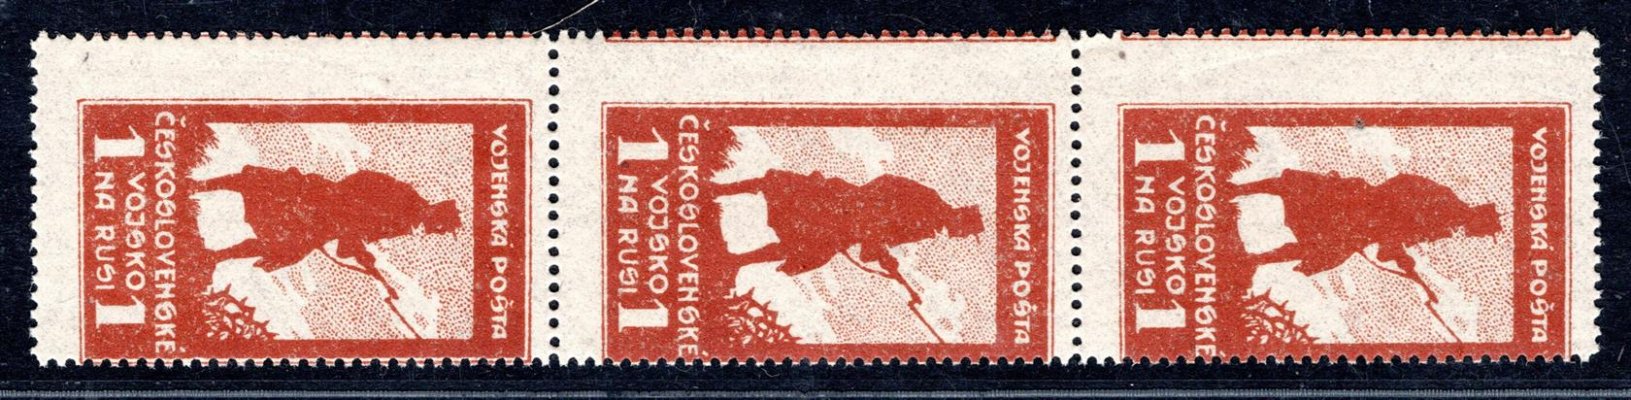 PP4 ; 1 Rubl hnědá ; svislá třípáska s posunem do obrazu známek 